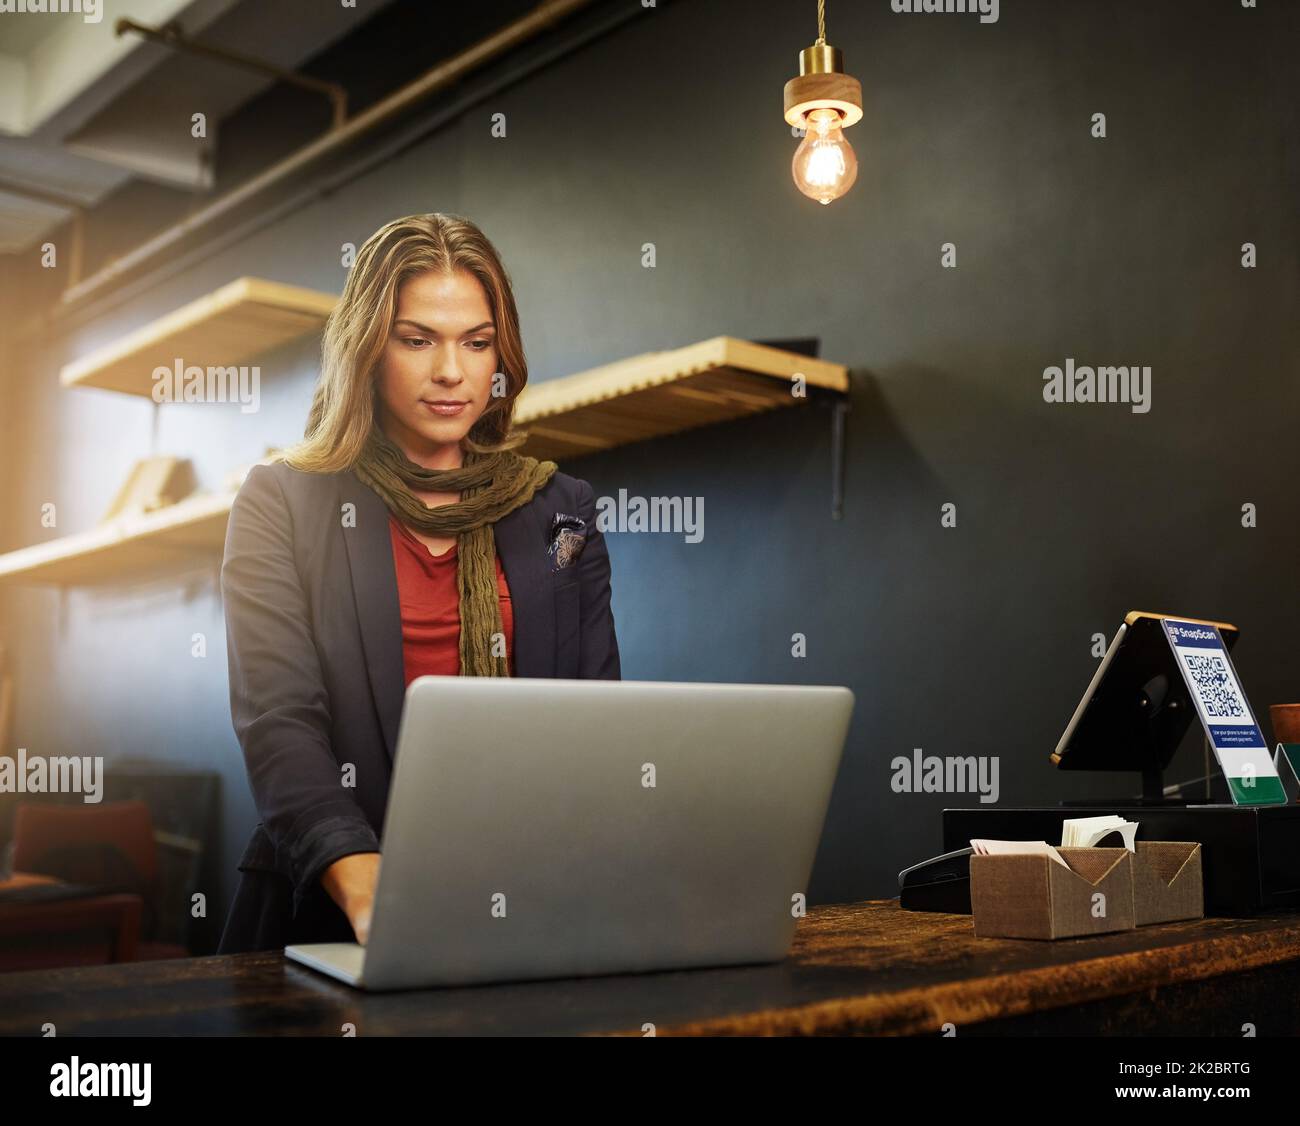 Arbeiten an einigen Marketing-Strategien online. Eine kleine Aufnahme einer jungen Geschäftsbesitzerin, die in ihrem Geschäft einen Laptop benutzt. Stockfoto